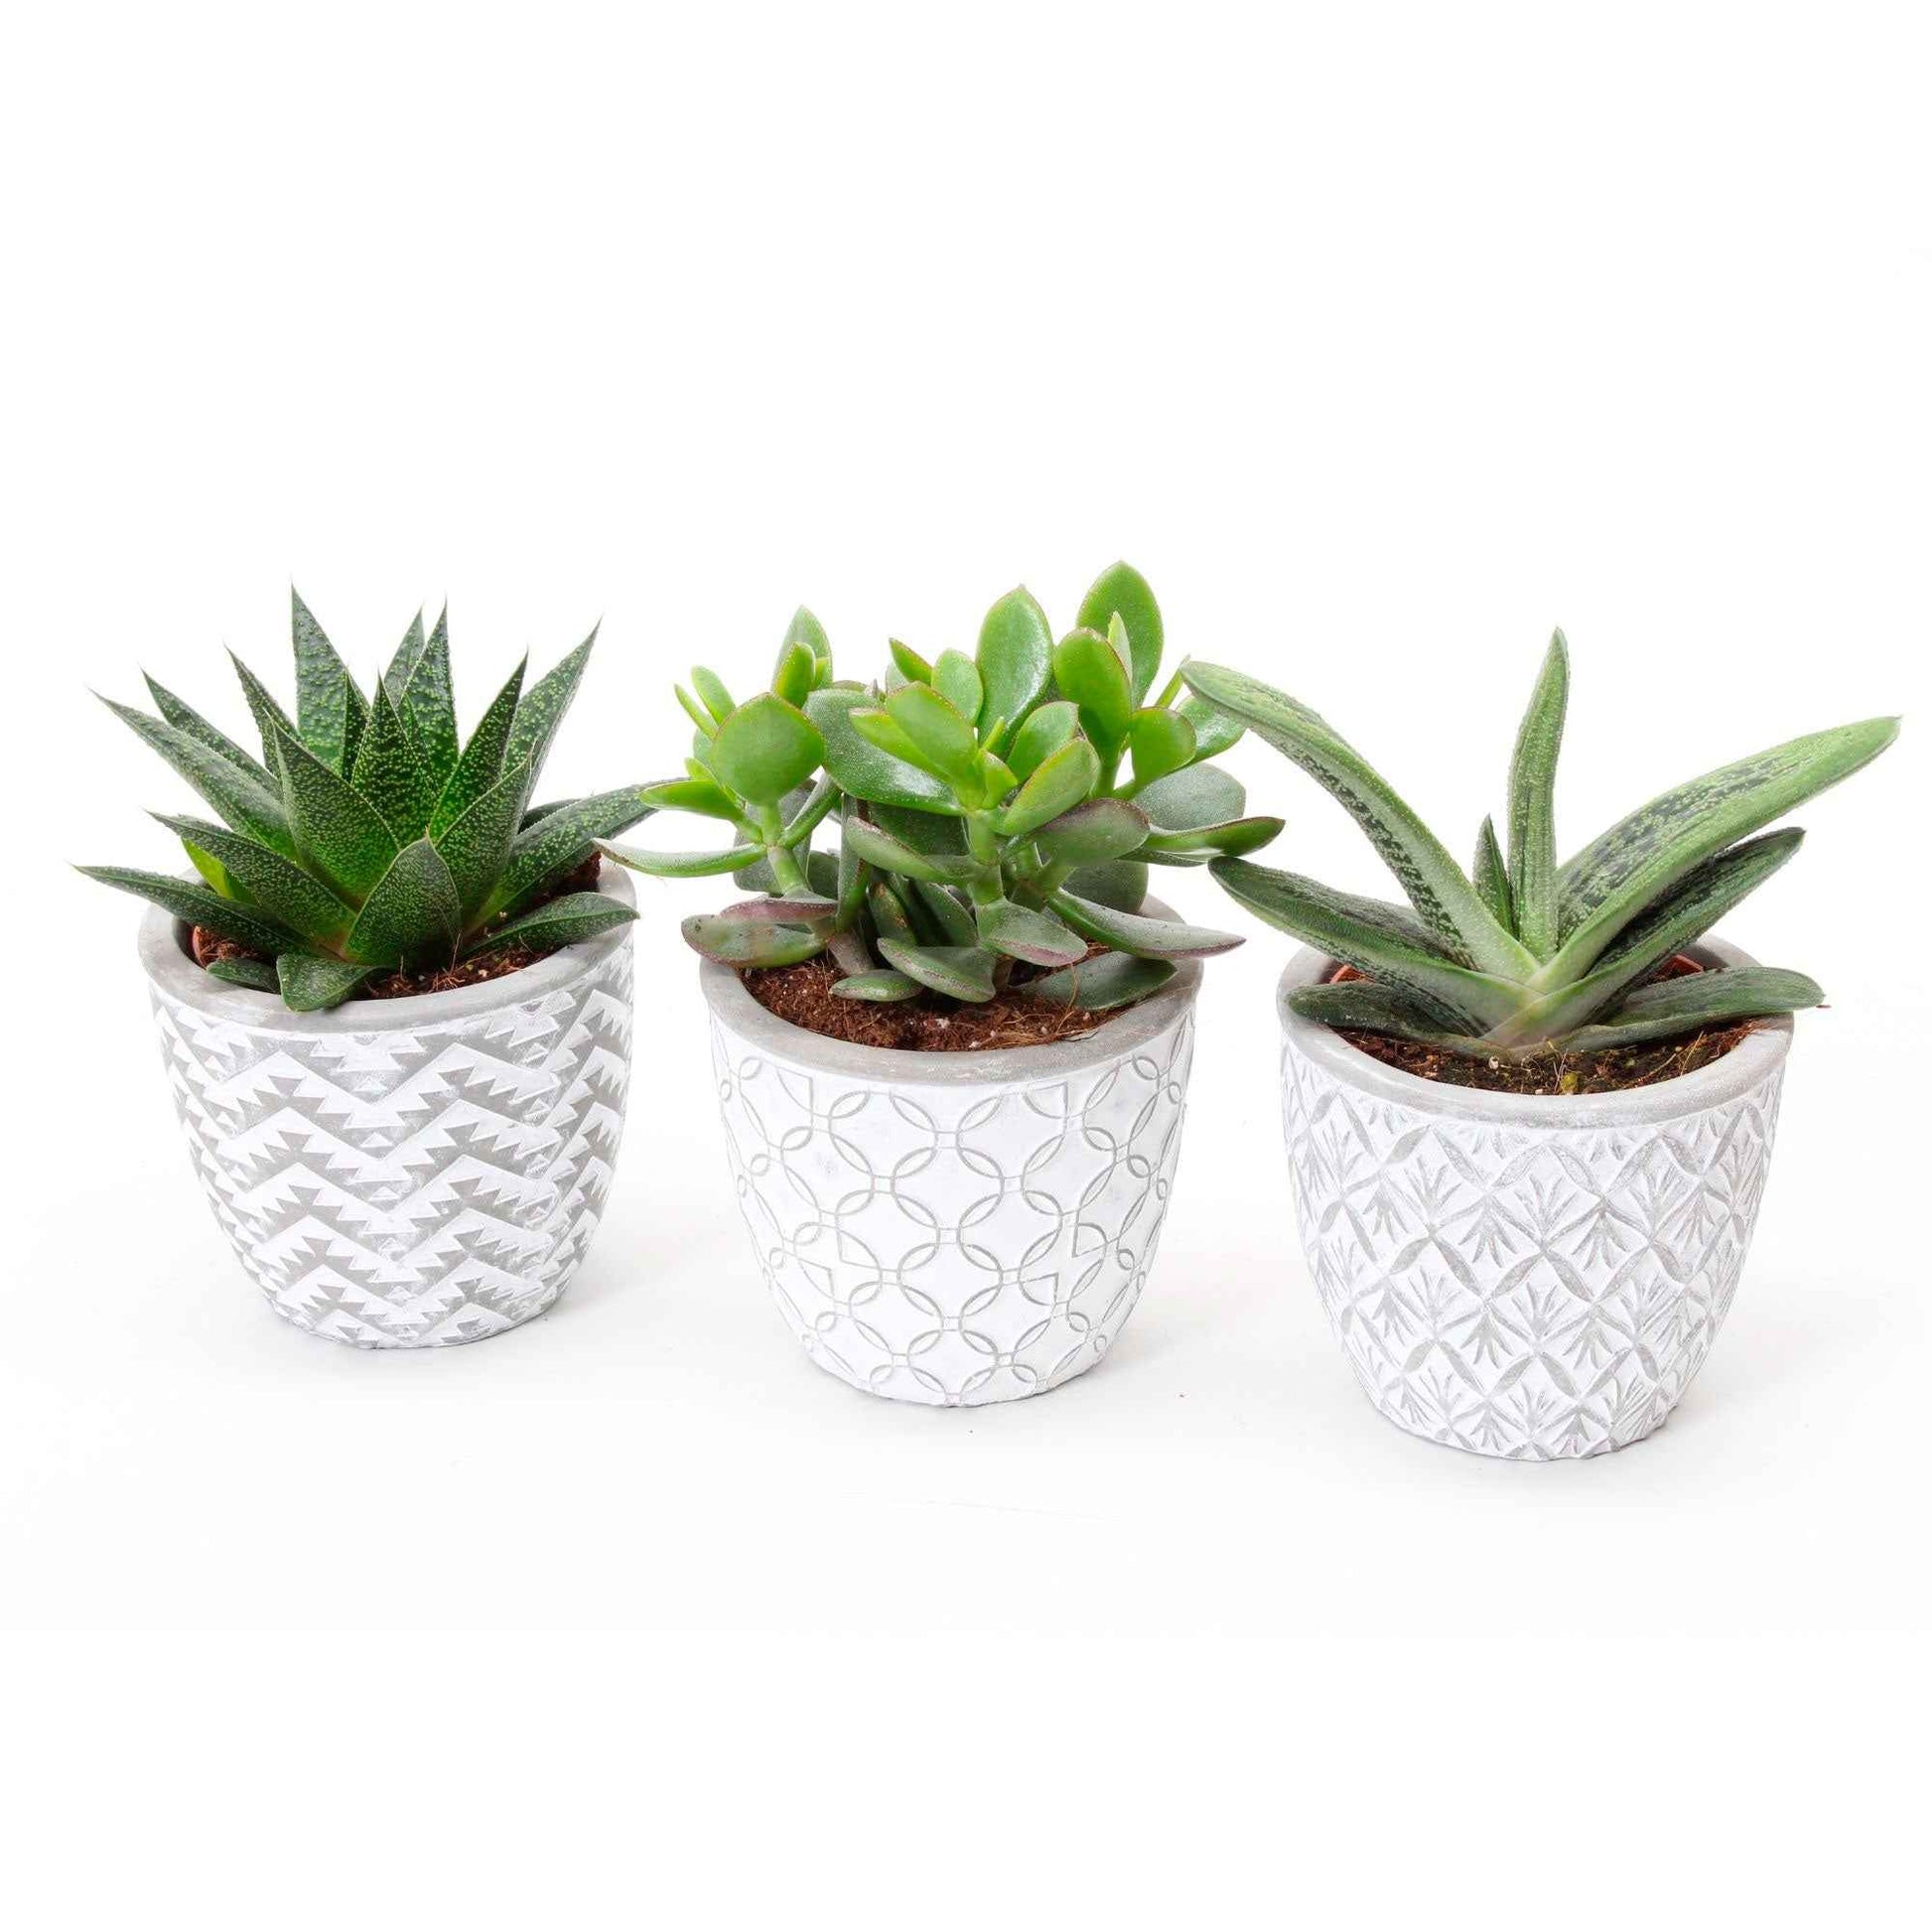 3x Succulente - Mélange 'Little Flow' avec cache-pots blancs - Ensembles de plantes d'intérieur